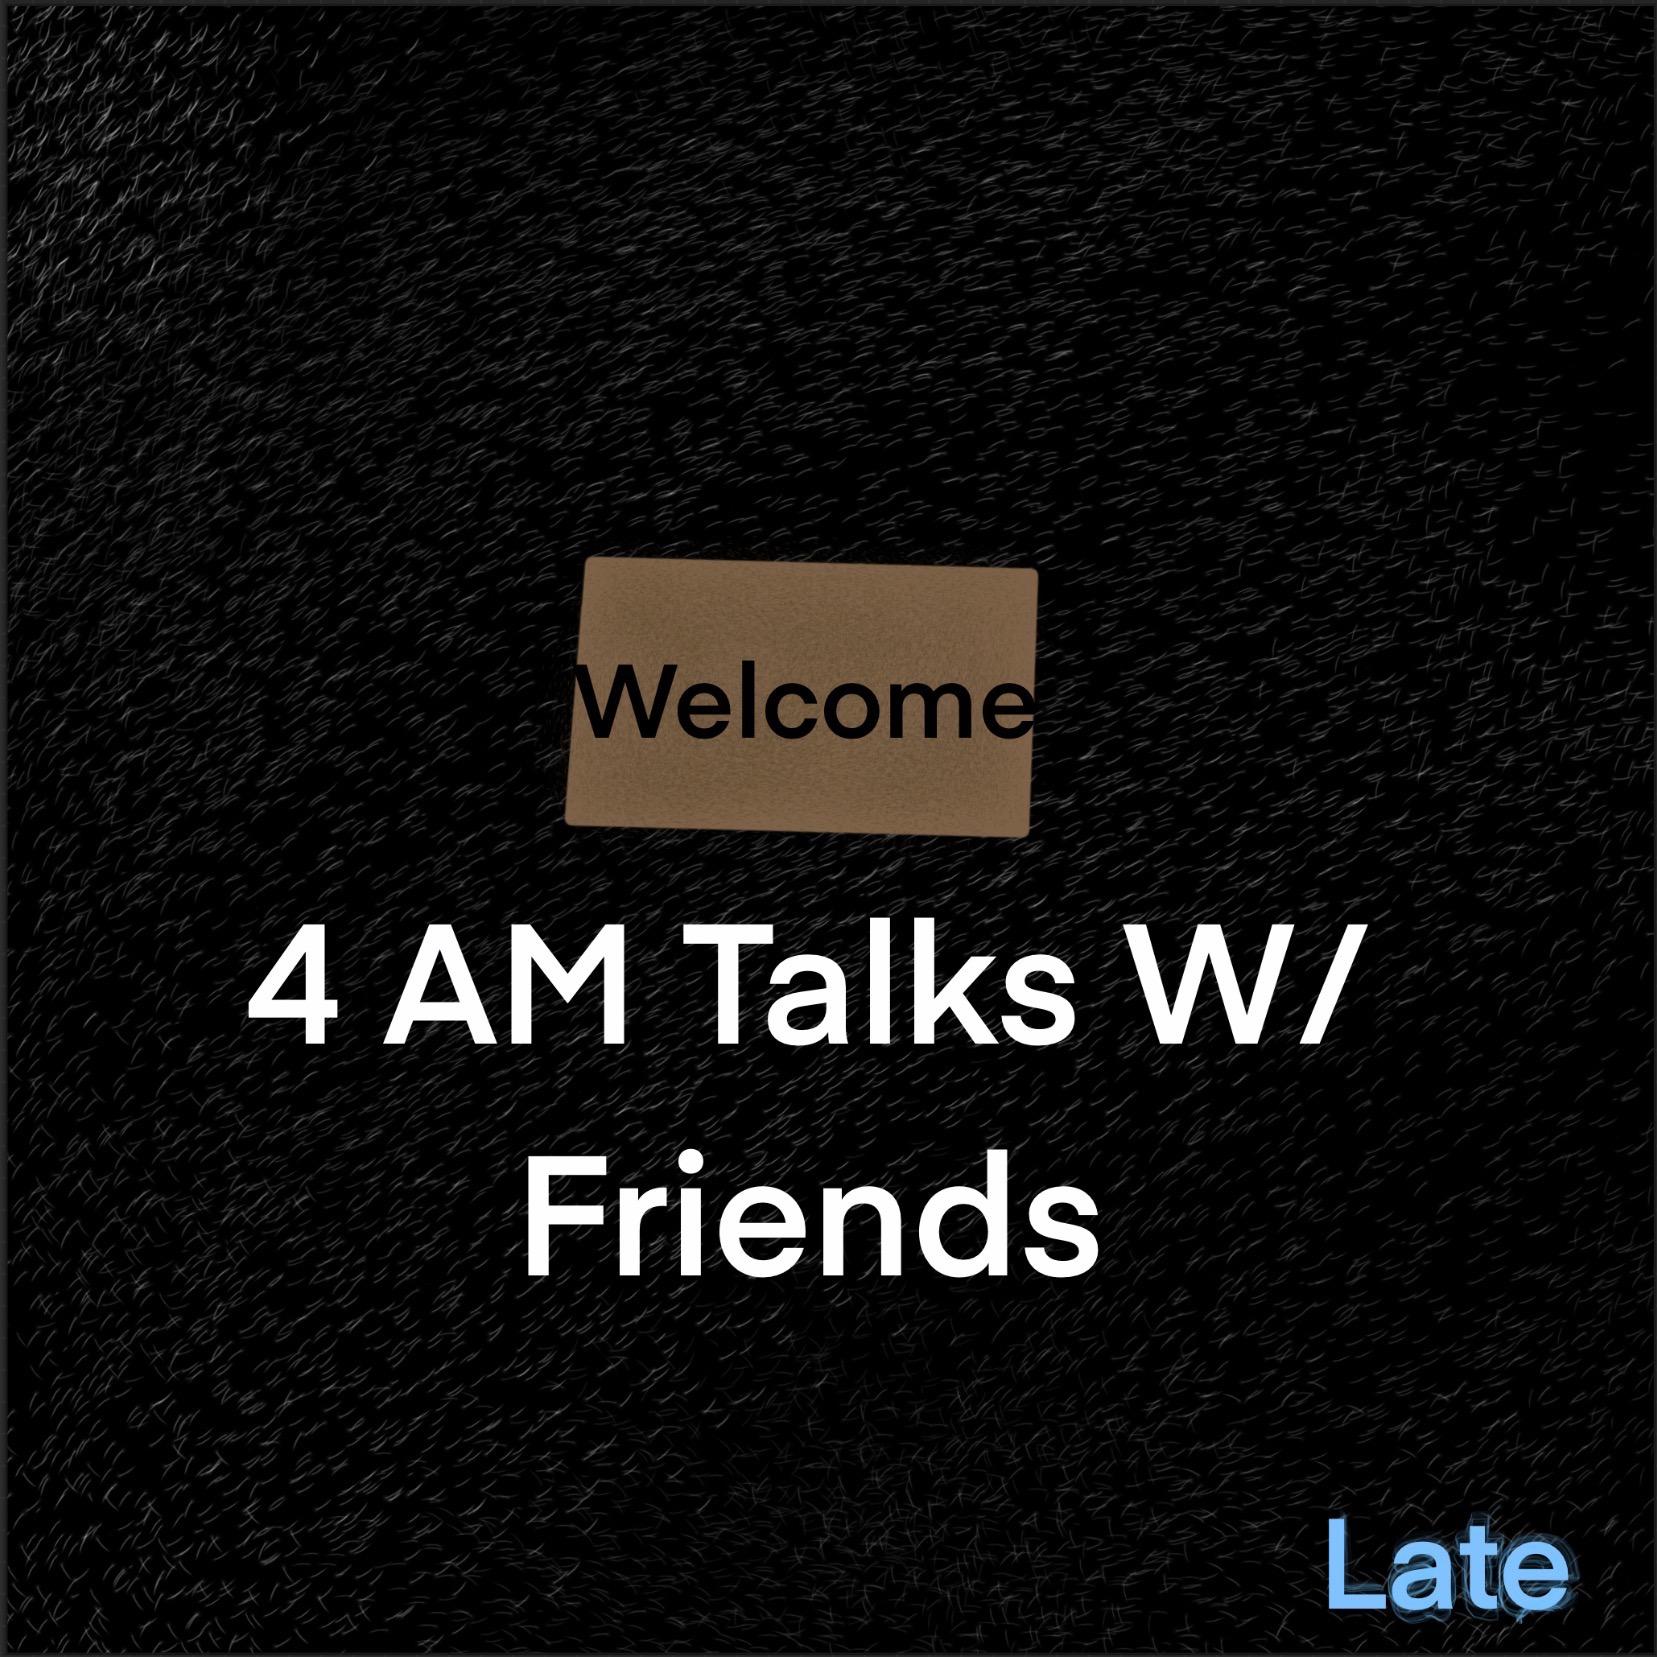 4 AM Talks W/ Friends